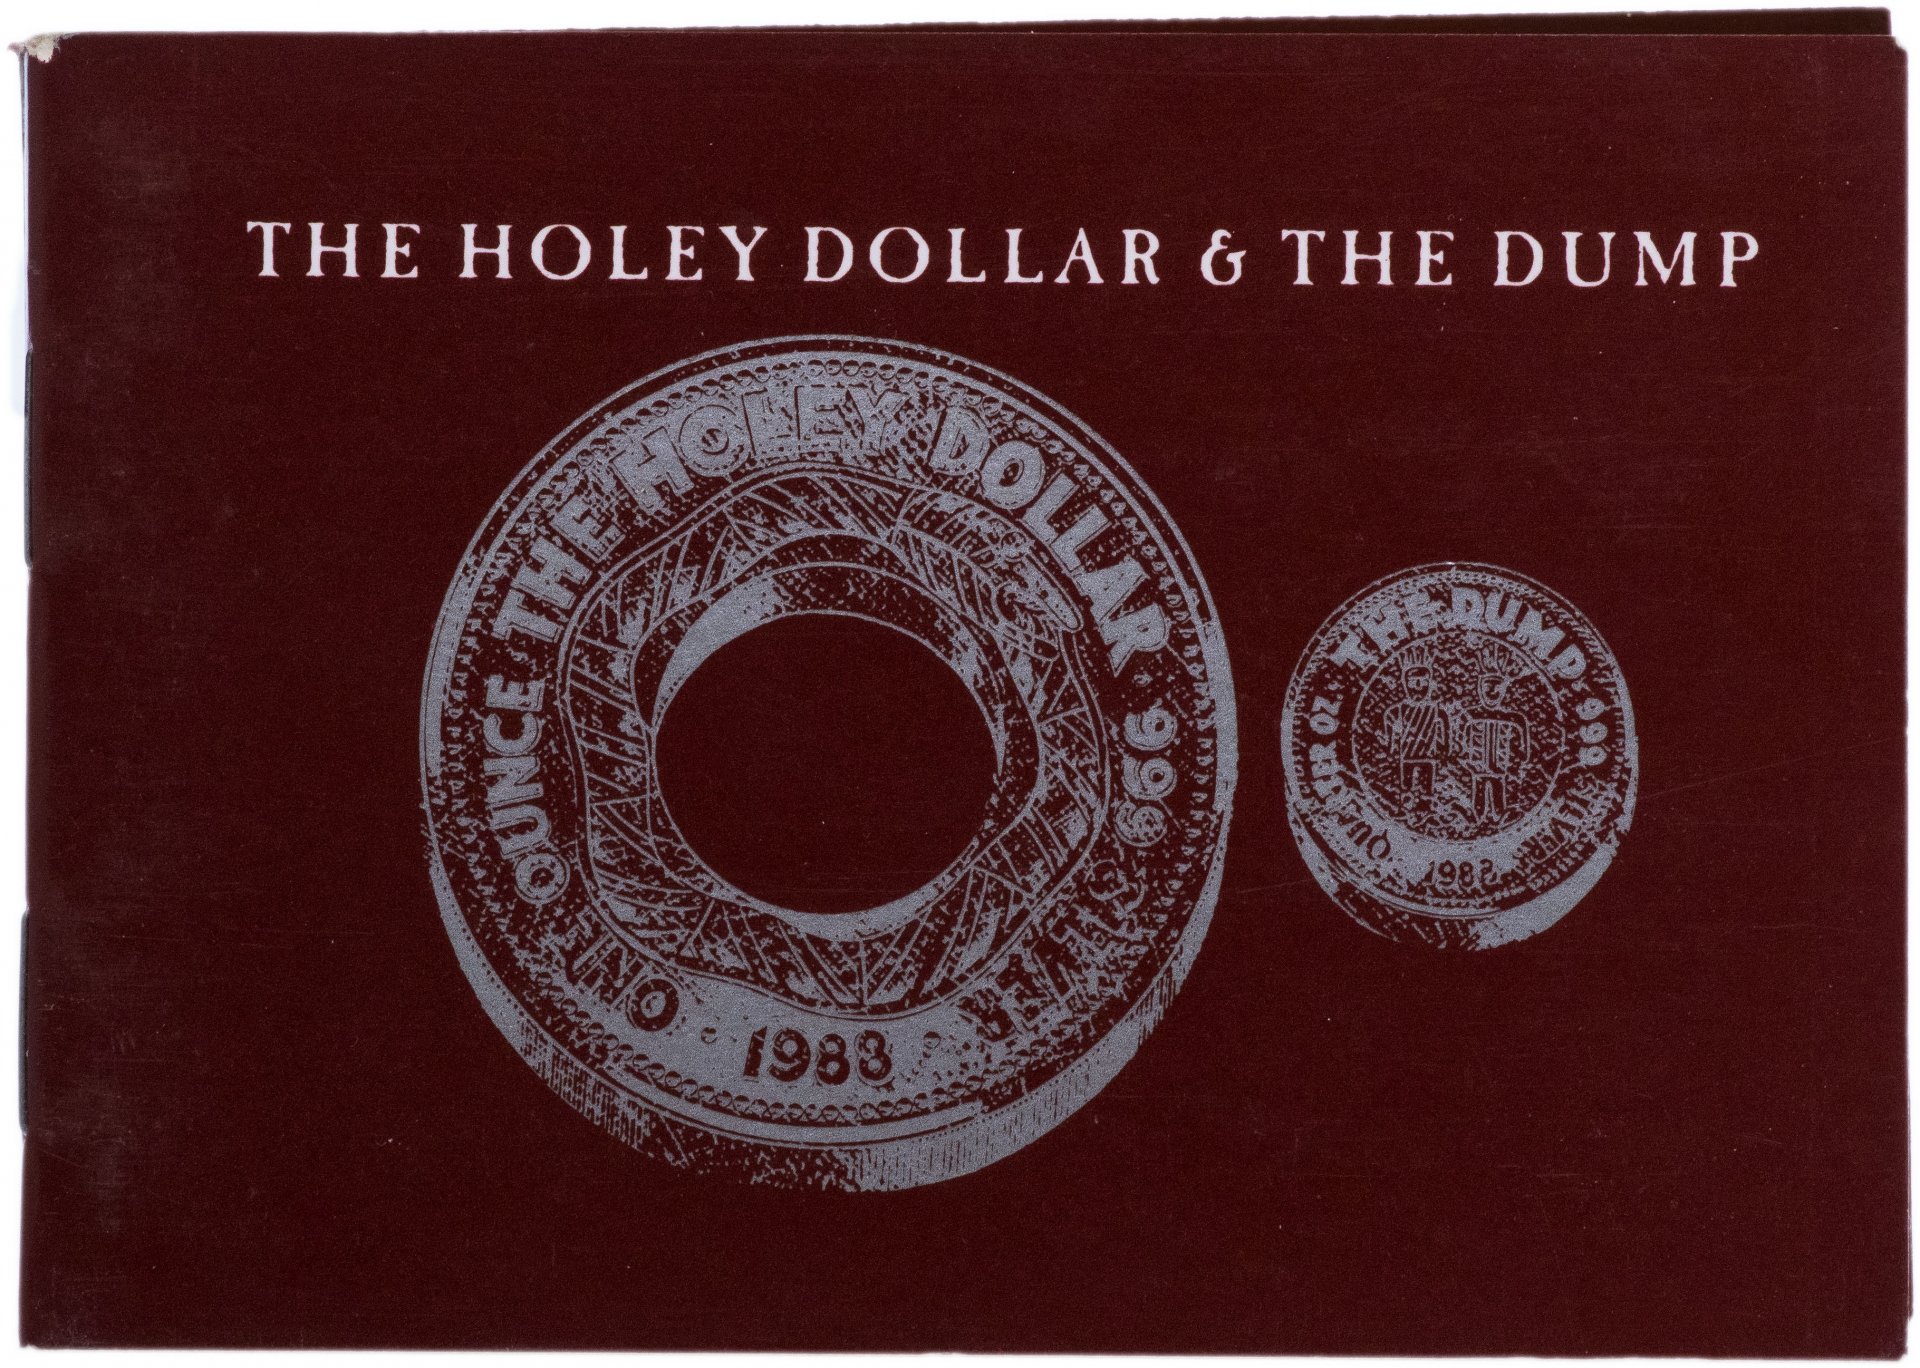 Потратить 1 доллар. Австралия 1 доллар дырявый. Holey Dollar 1988 Coin. Австралийски Ром Холли доллар. Один доллар 87 центов толкование её роли.